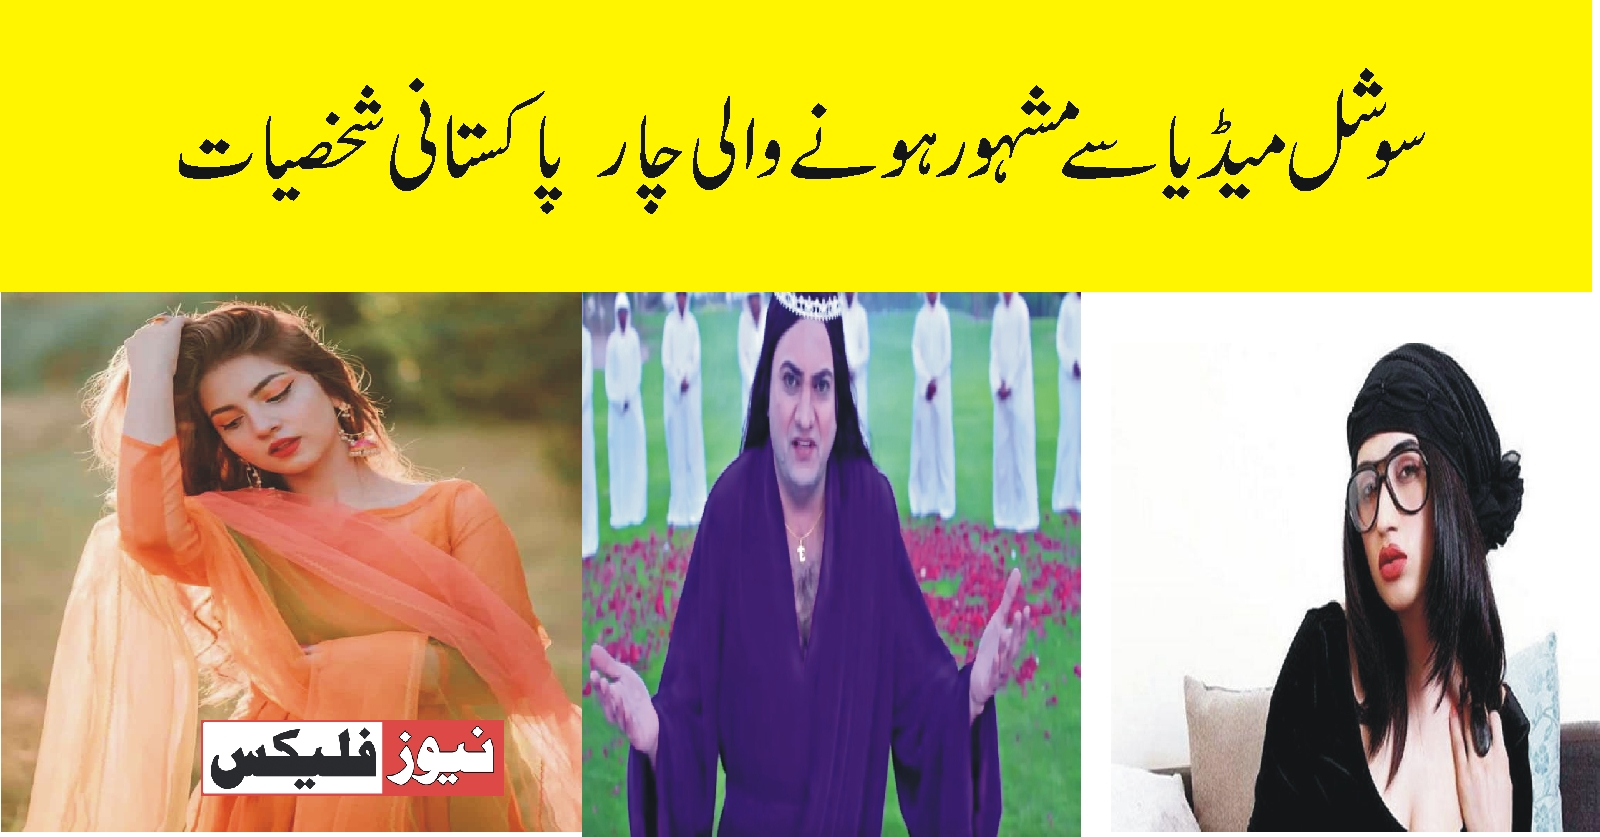 سوشل میڈیا سے مشہور ہونے والی چار پاکستانی شخصیات